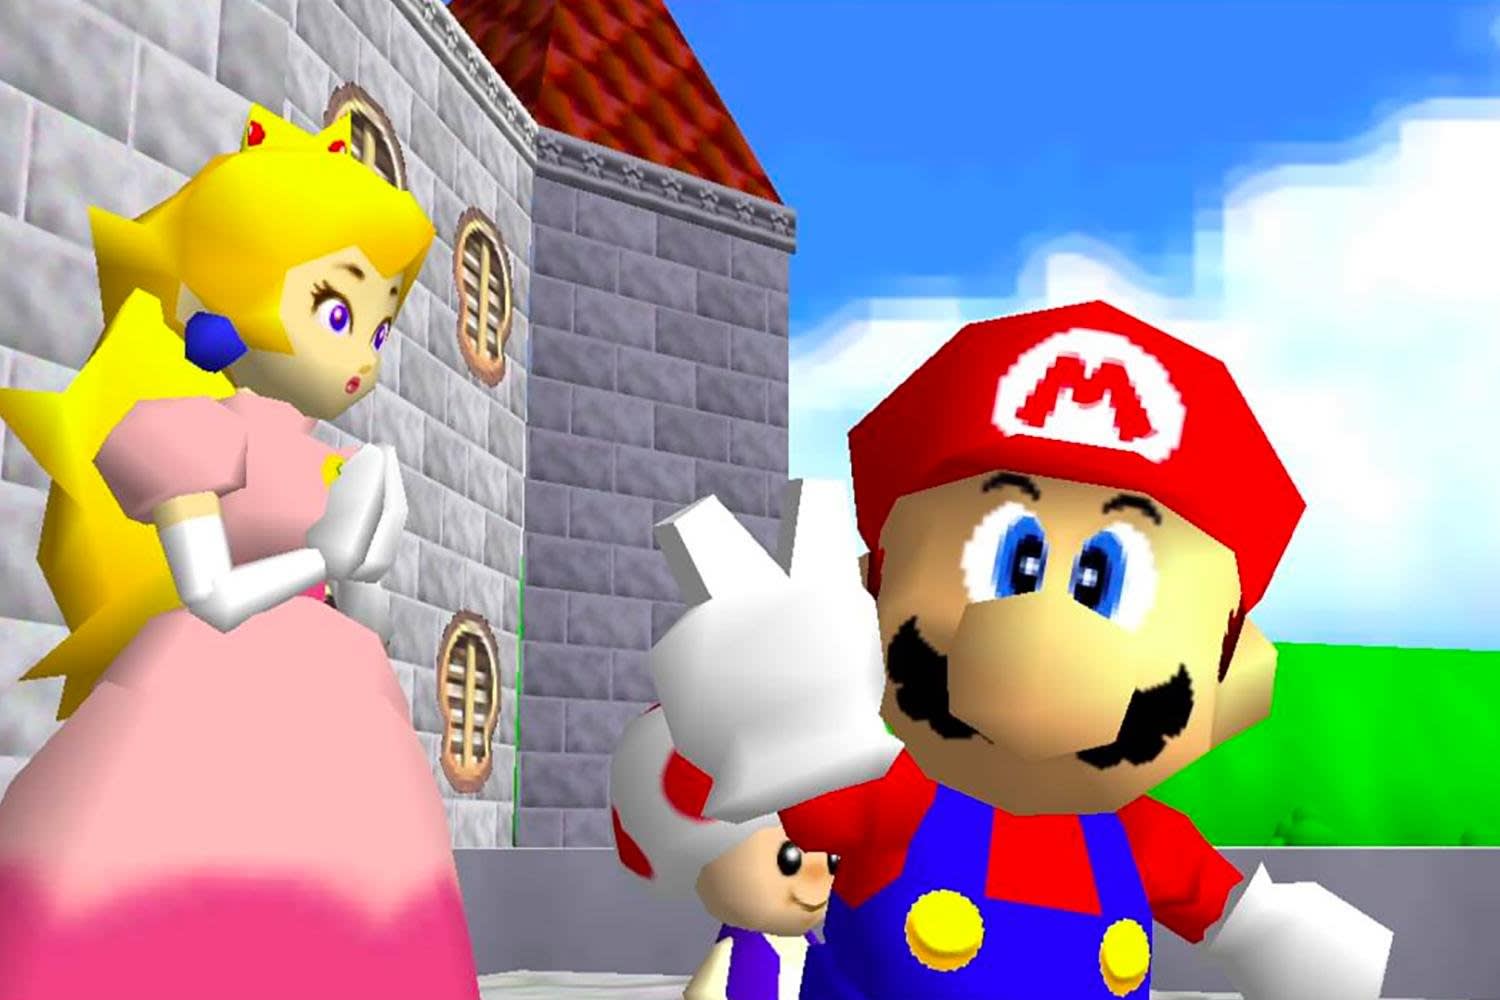 Super Mario 64 Head Remastered Download - po slaps smg4 roblox